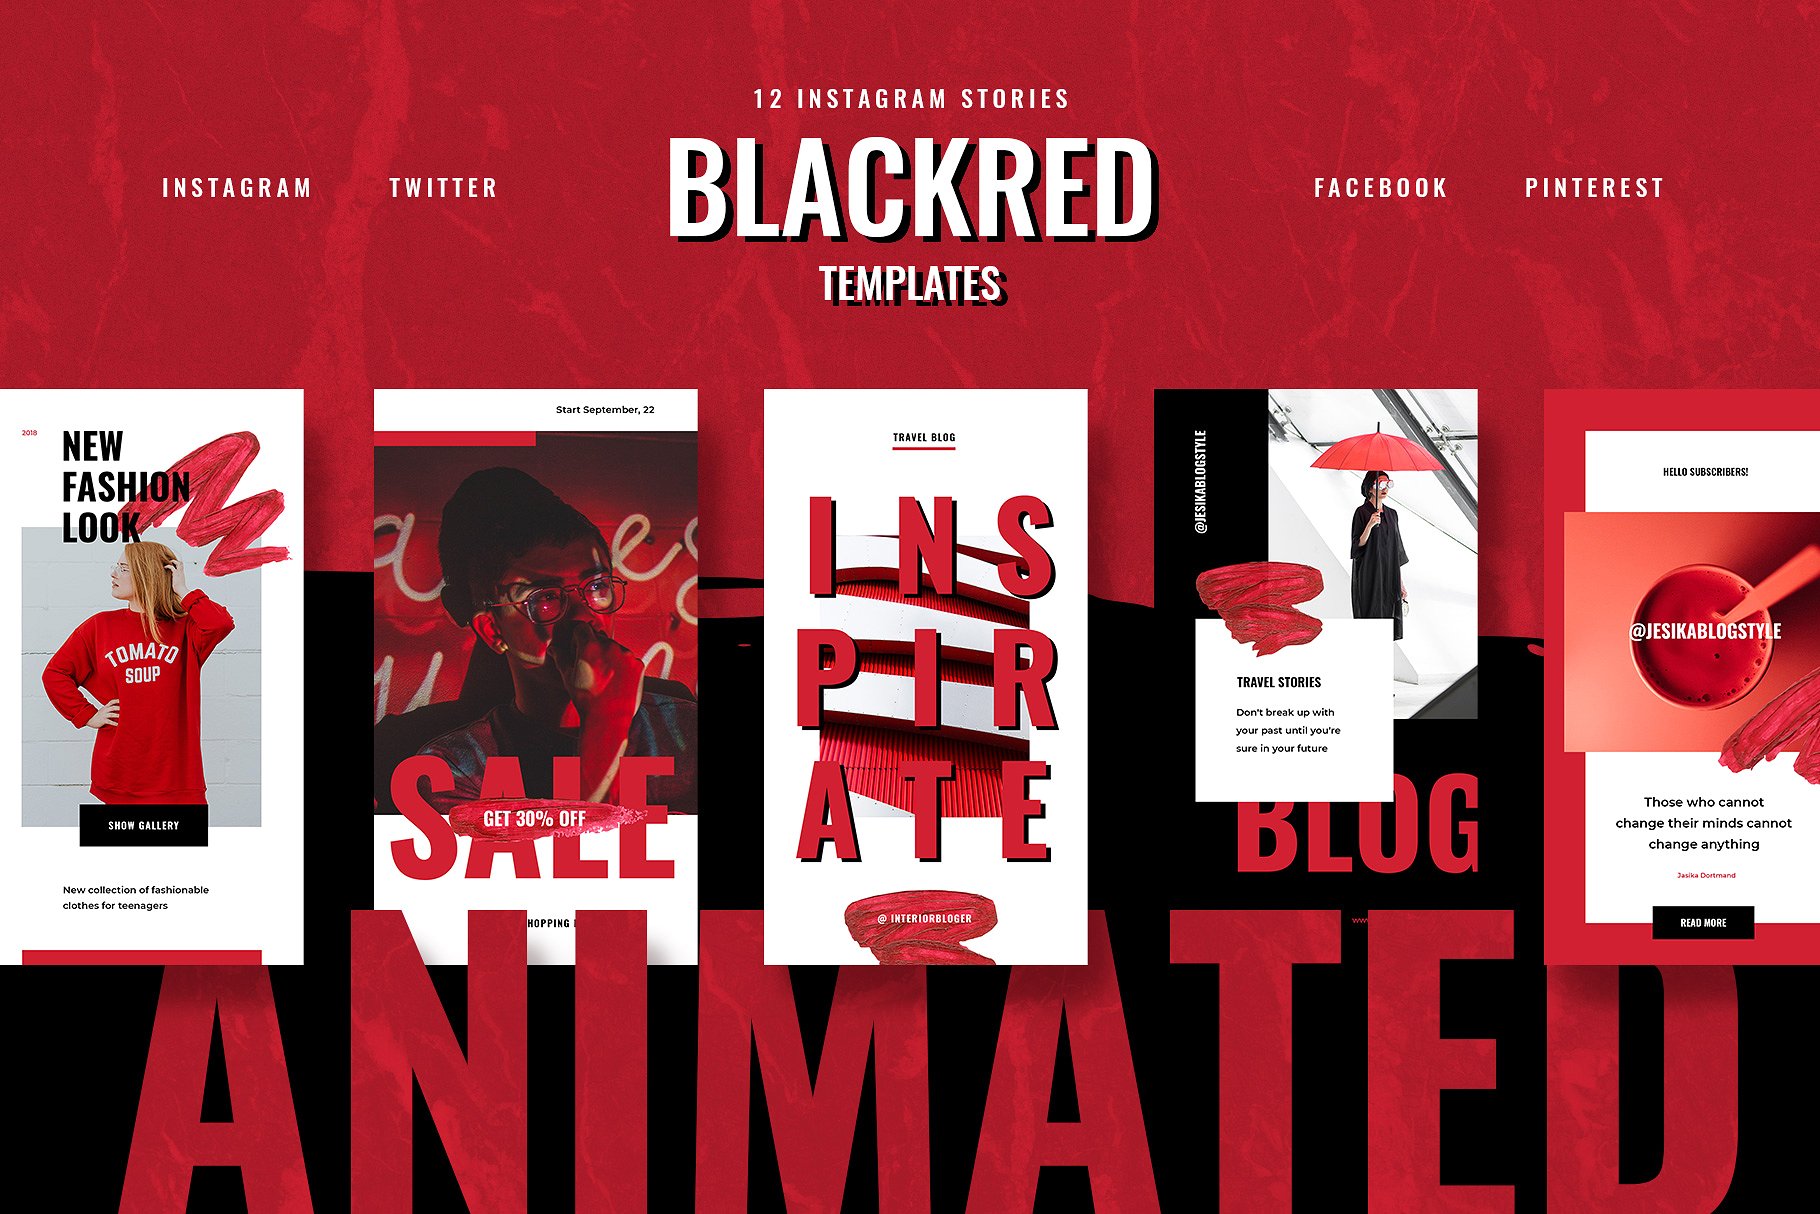 色彩活泼的红黑配色Ins故事贴图模板非凡图库精选 ANIMATED Blackred Instagram Stories插图